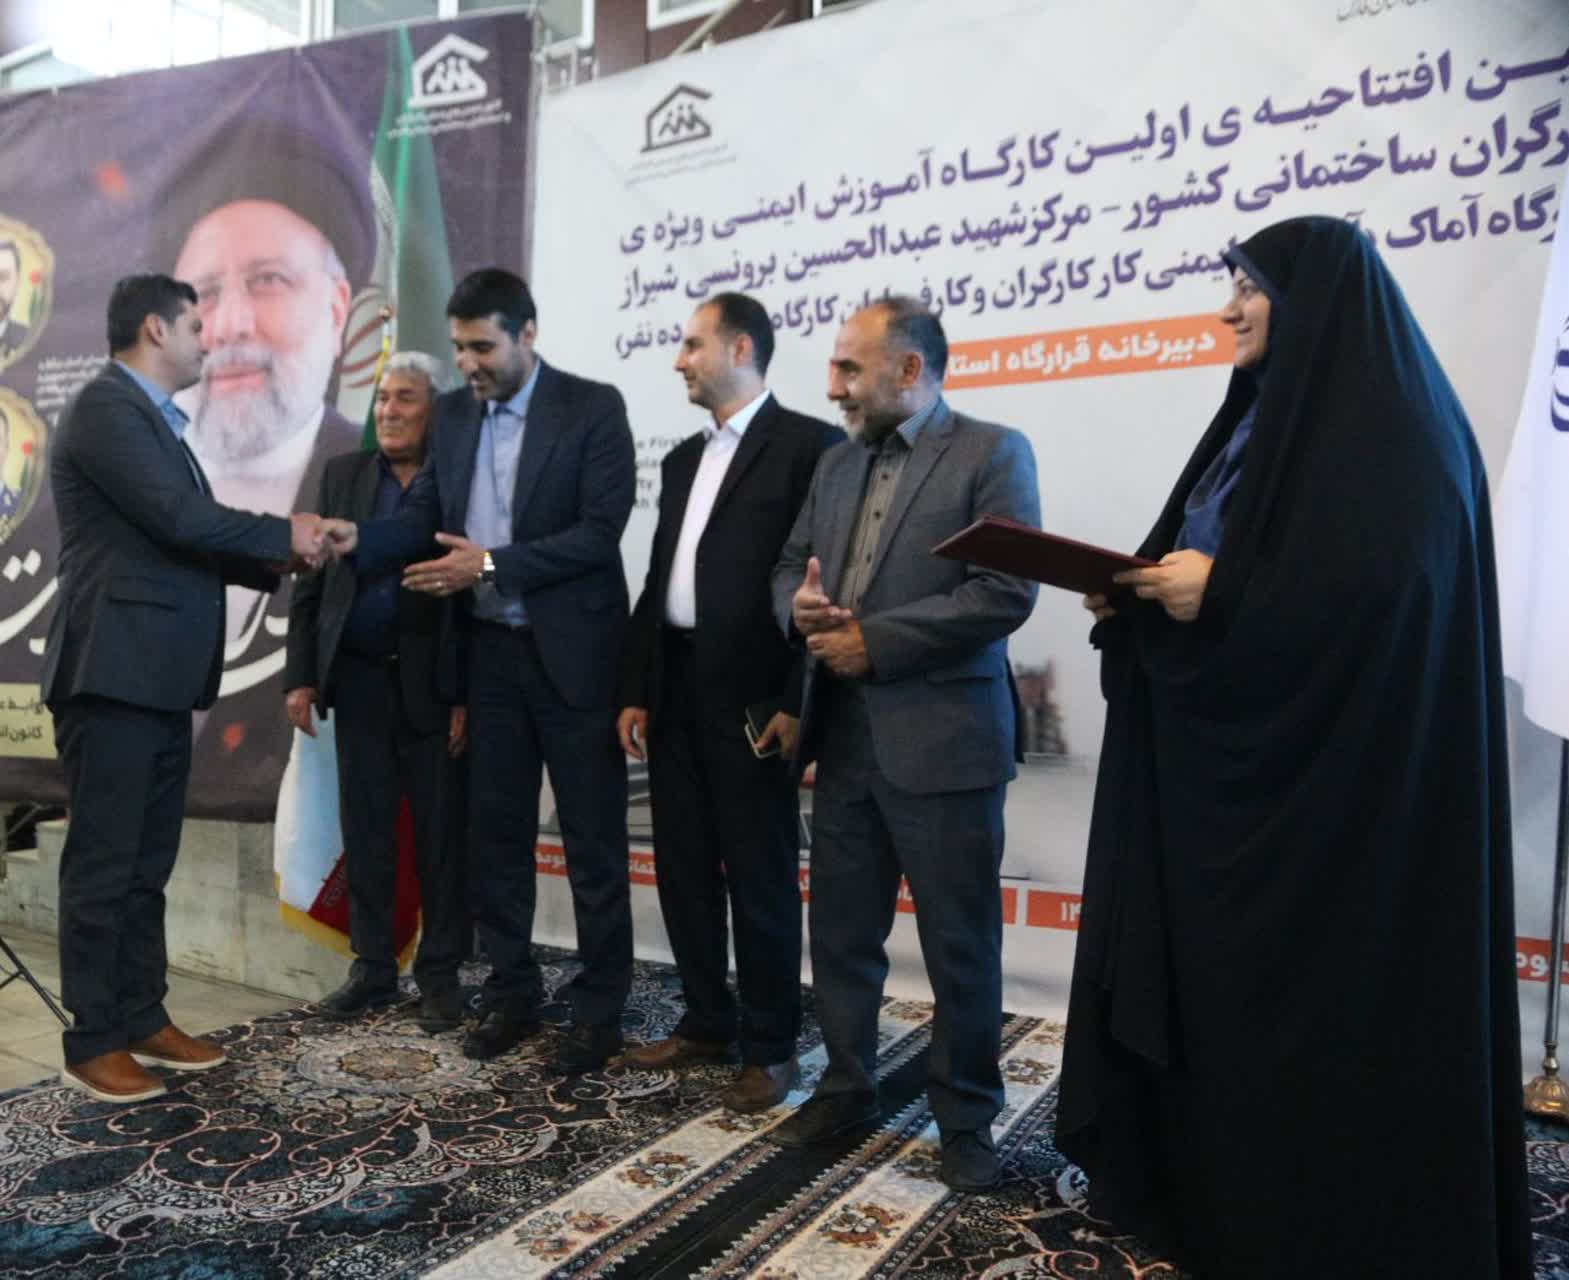 اولین همایش قرارگاه آموزش های ایمنی کارگران و استادکاران ساختمانی در شیراز برگزار شد